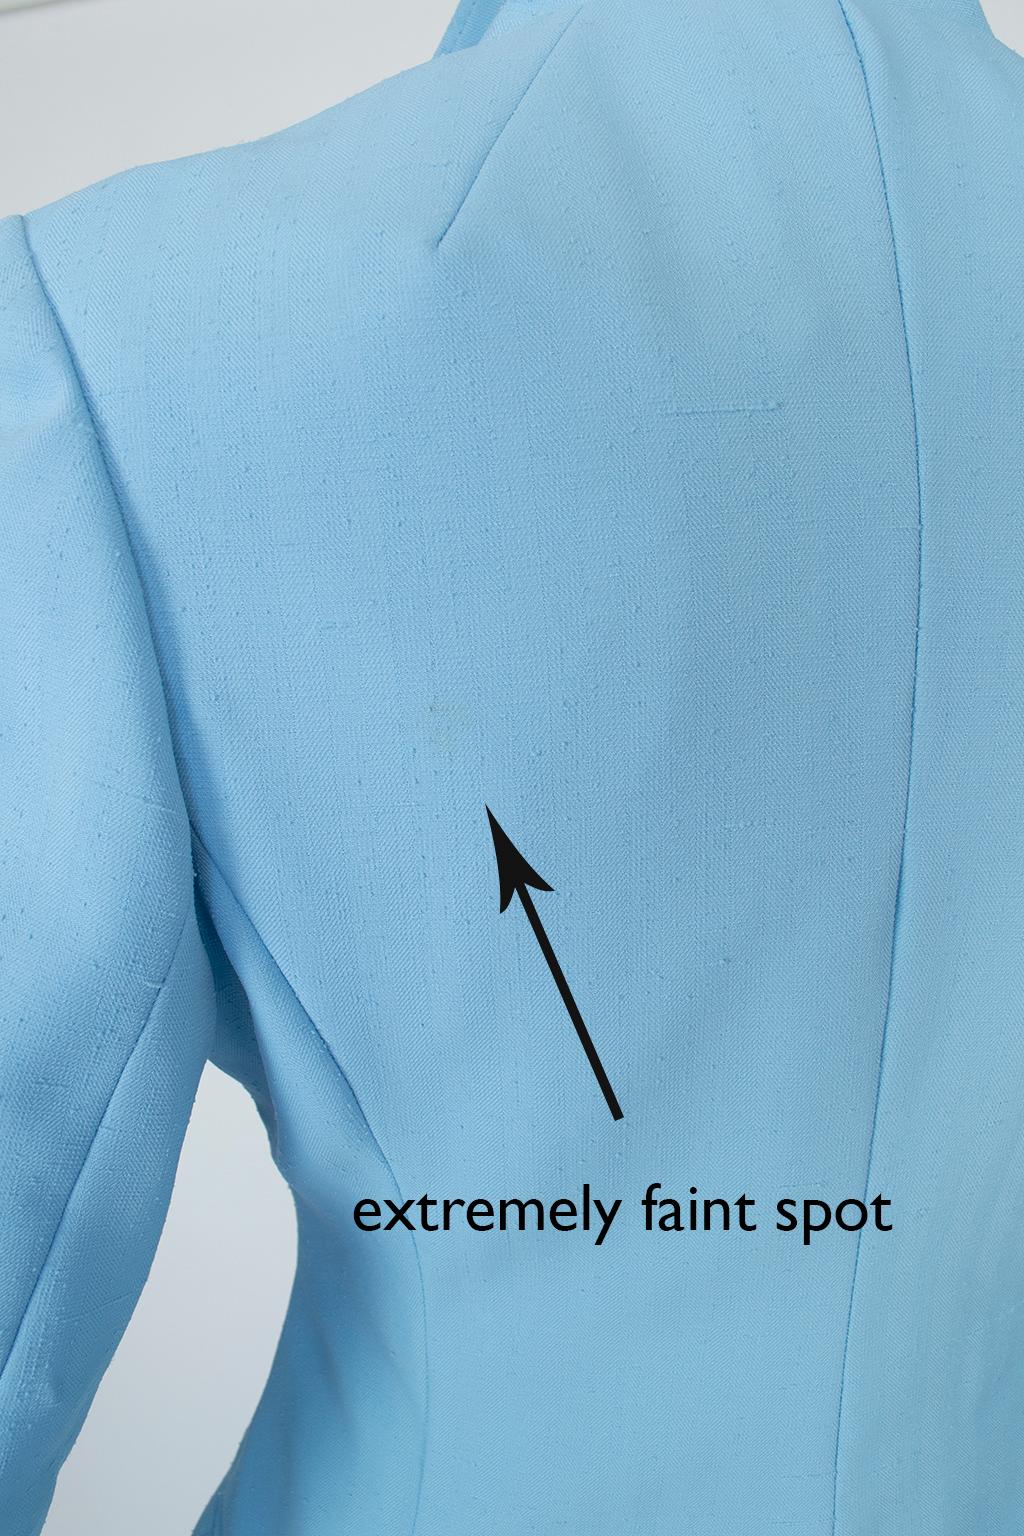 Lilli Ann Paris Powder Blue 3-Piece Western Pant Suit – XS, 1970s For Sale 13